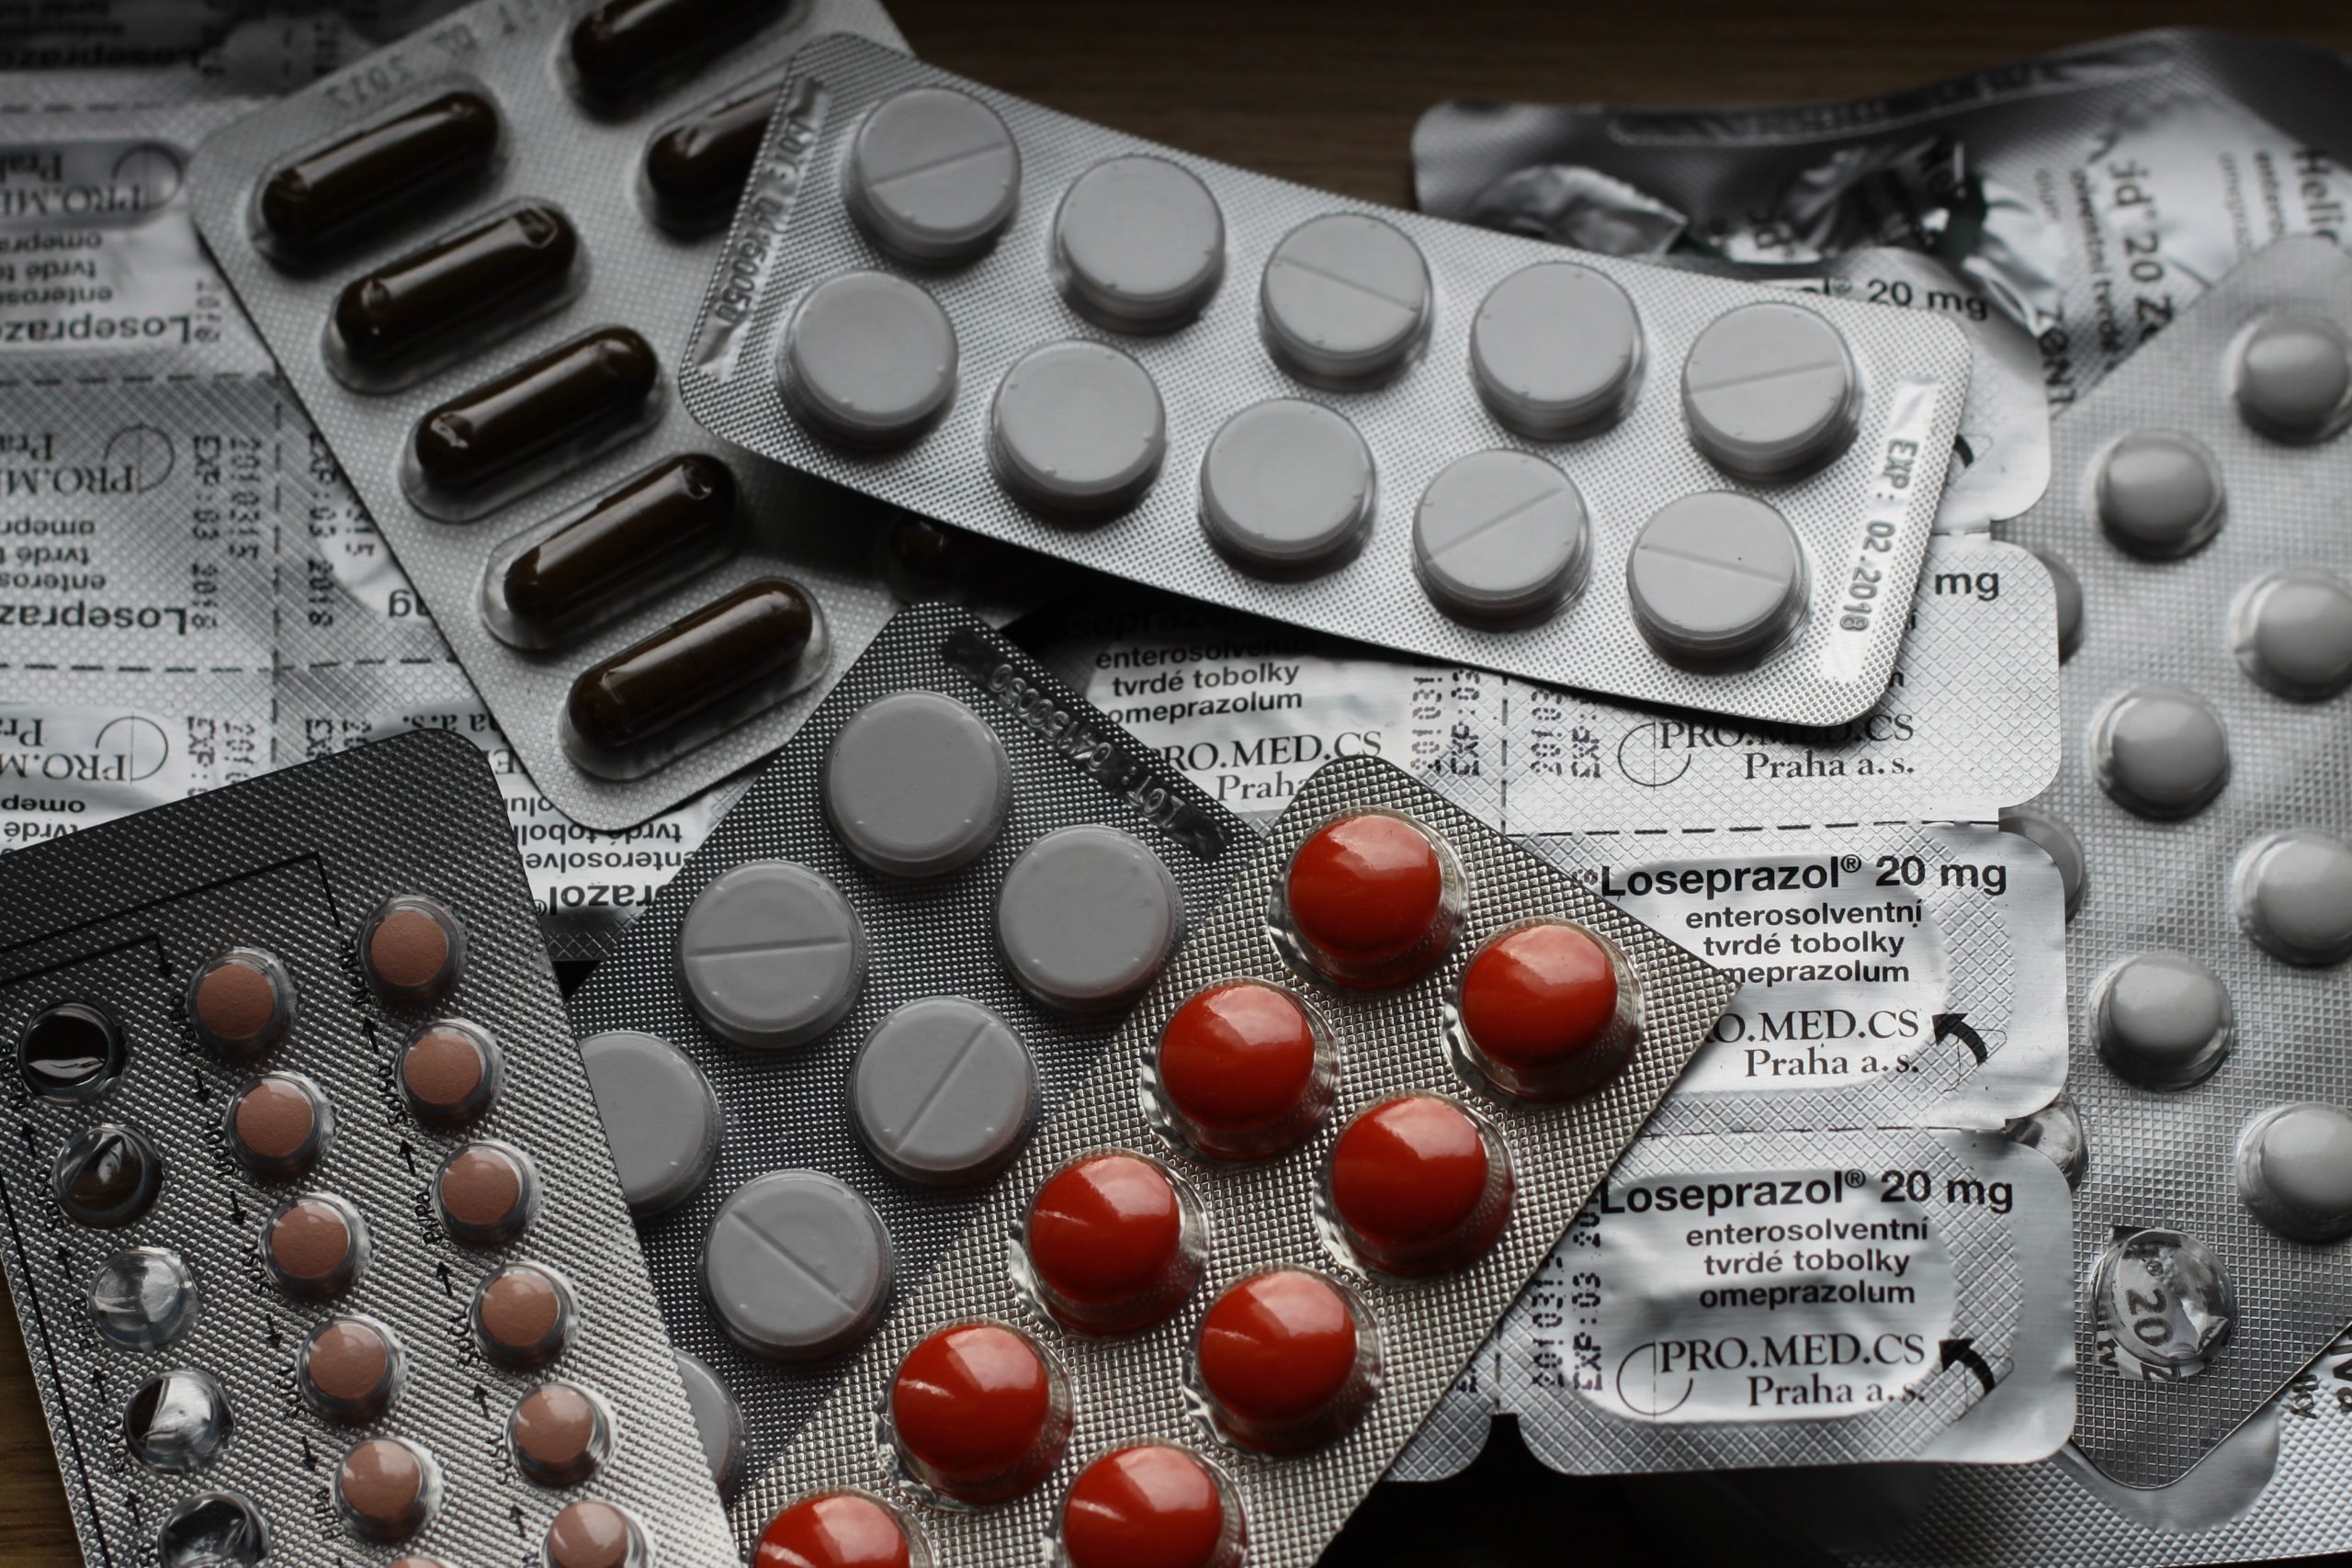 Μεγάλες ελλείψεις φαρμάκων – Άδειασαν τα ράφια των φαρμακείων